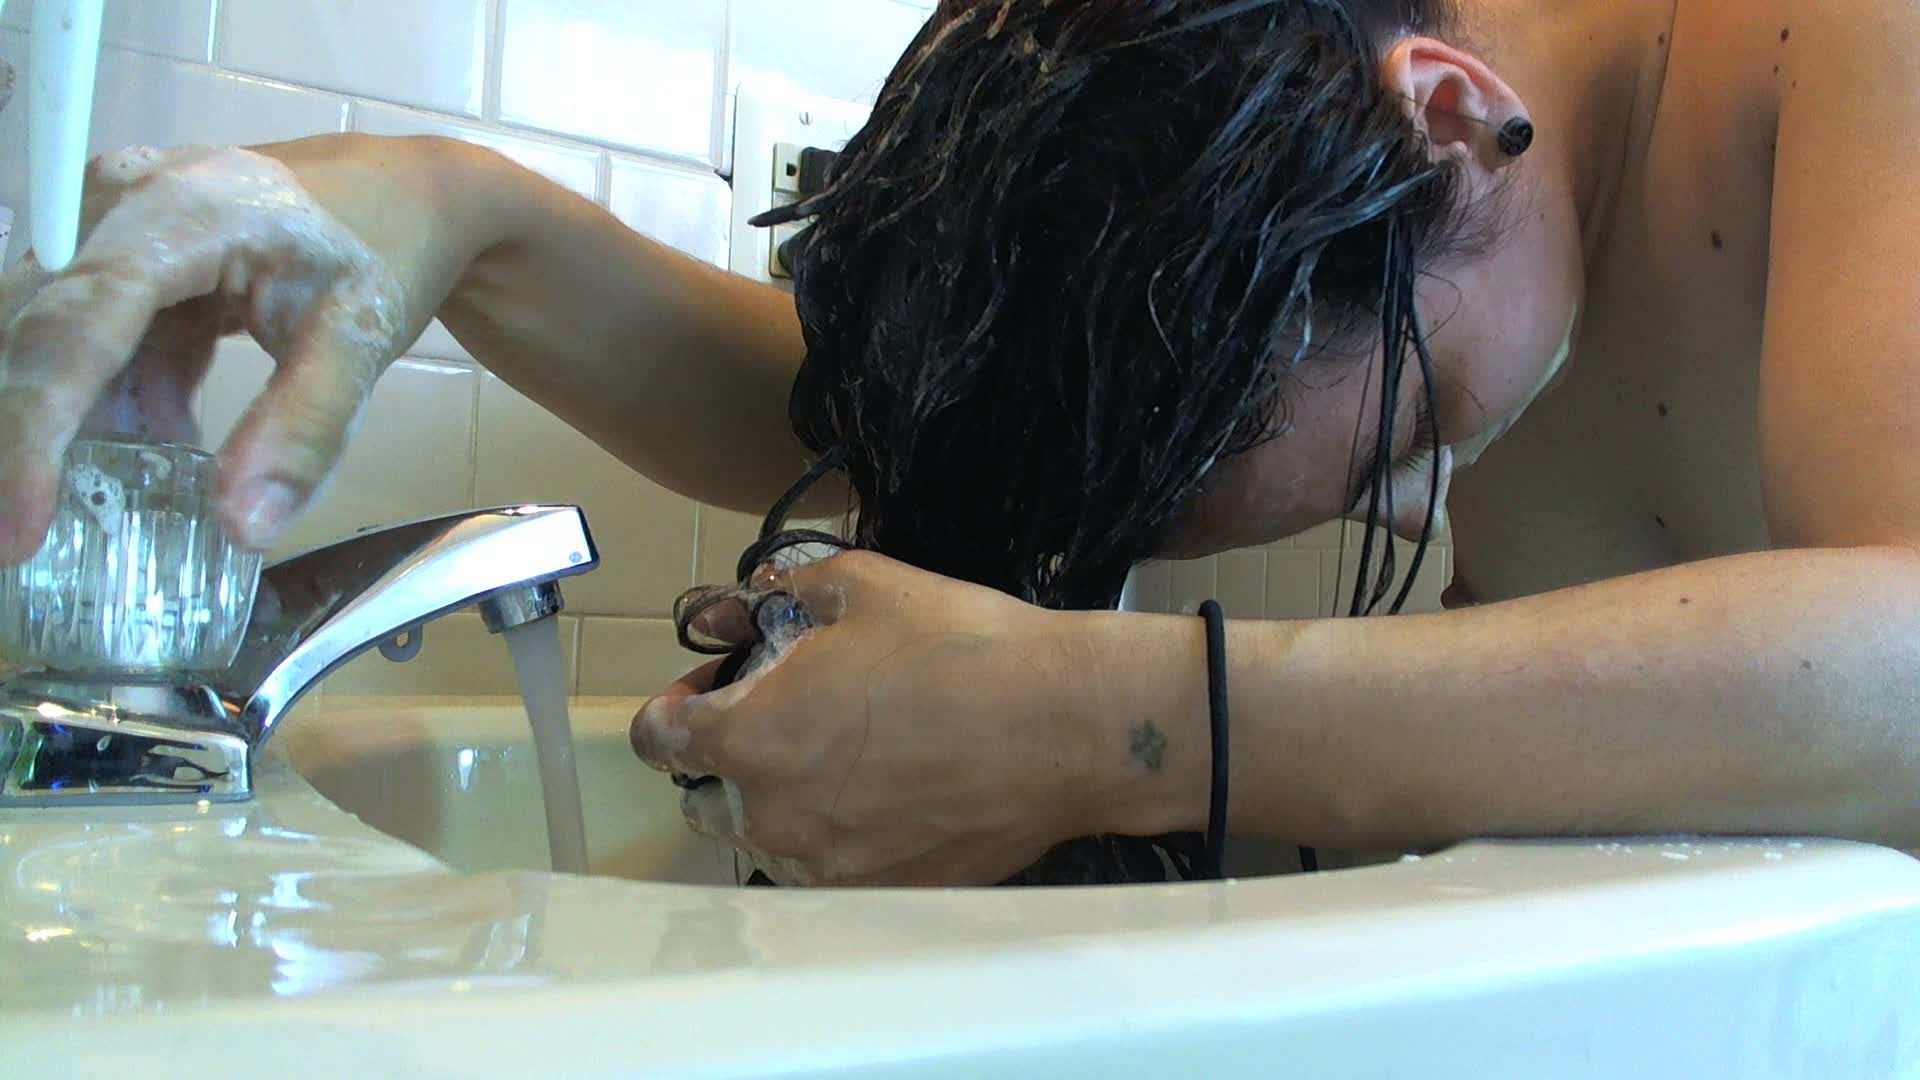 Long Hair Washing in Sink